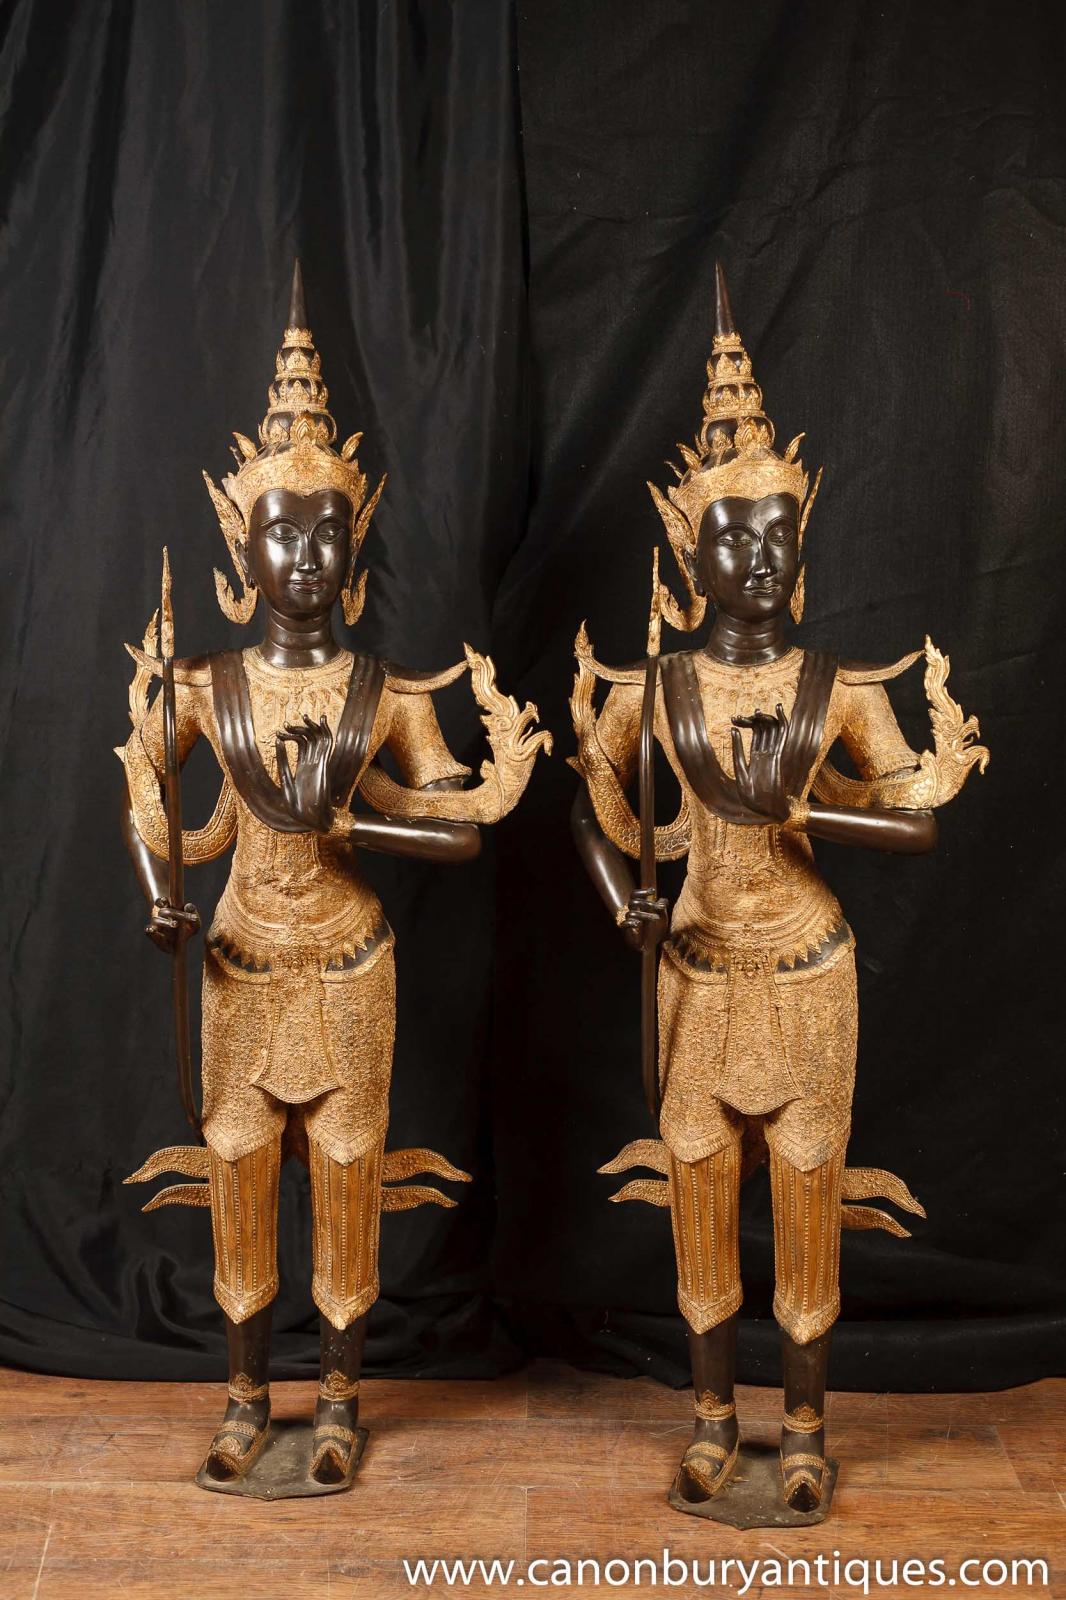  Large Bronze Bali Temple Buddha Statues Buddhism Buddhist Art | eBay